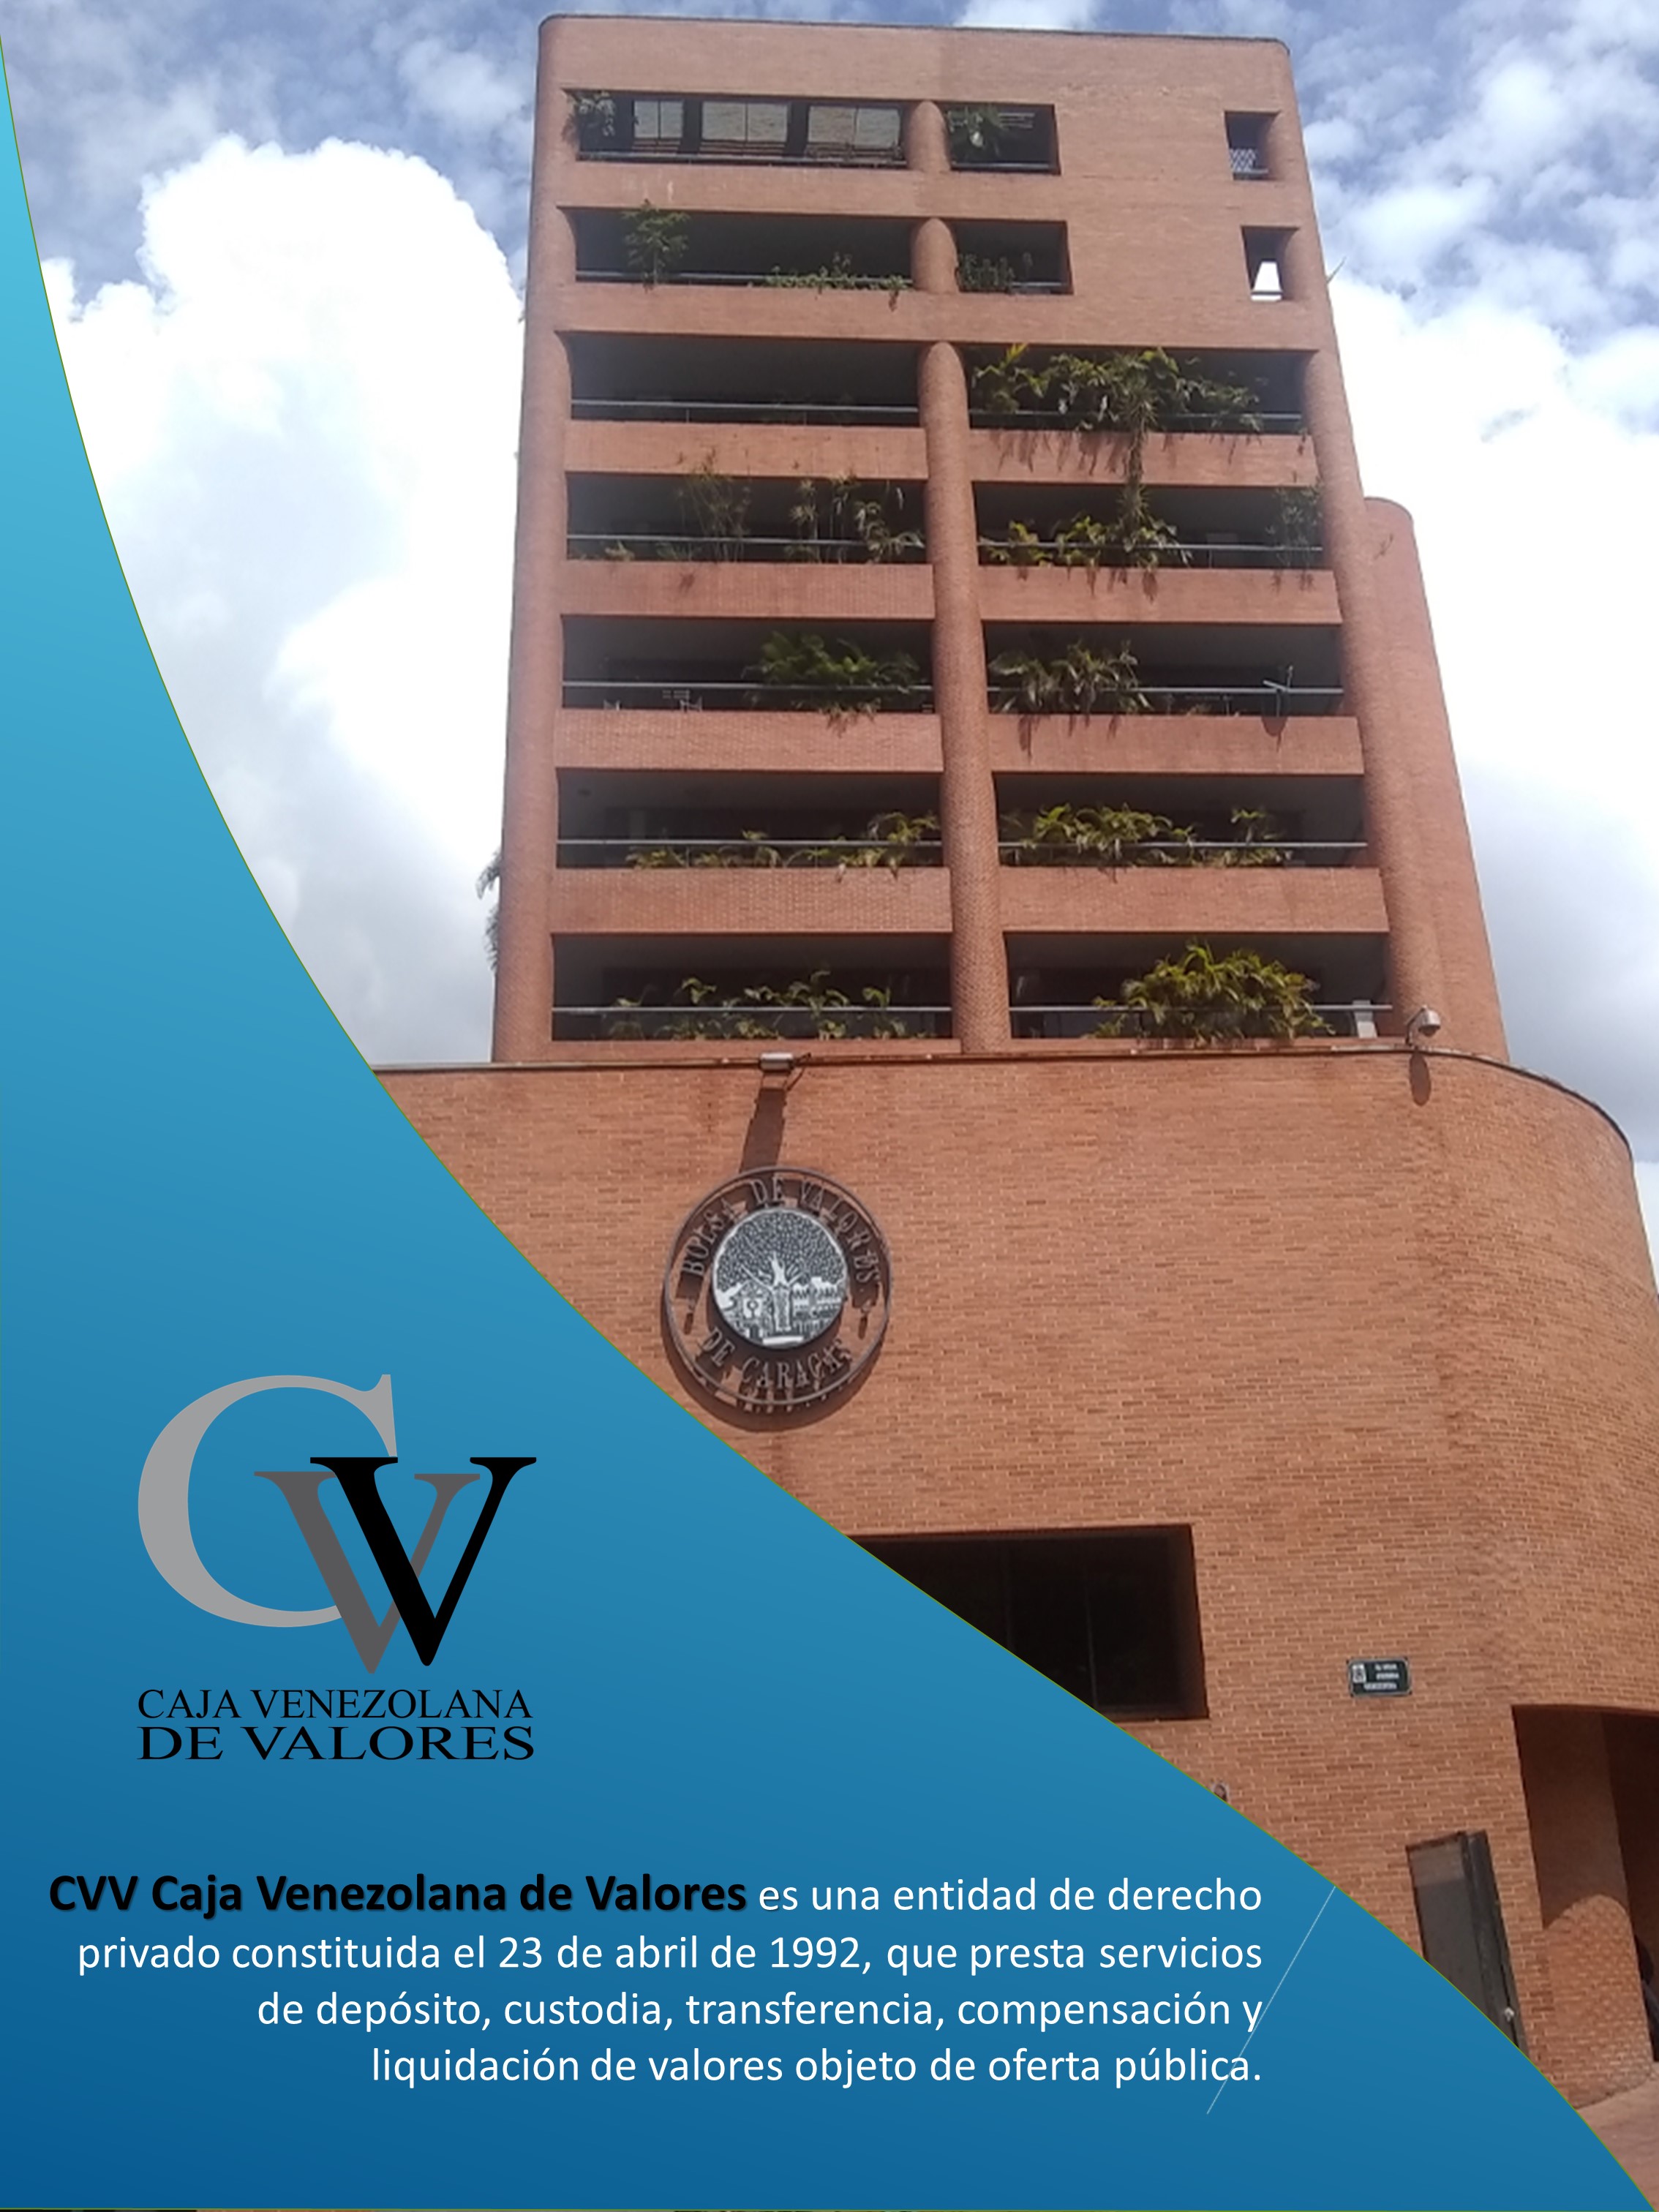 Pegajoso Actuación módulo C.V.V Caja Venezolana de Valores S.A on Twitter: "La #CVV CAJA VENEZOLANA  DE VALORES S.A, es una entidad de derecho privado, constituida el 23 de  abril de 1992 y promovida por las